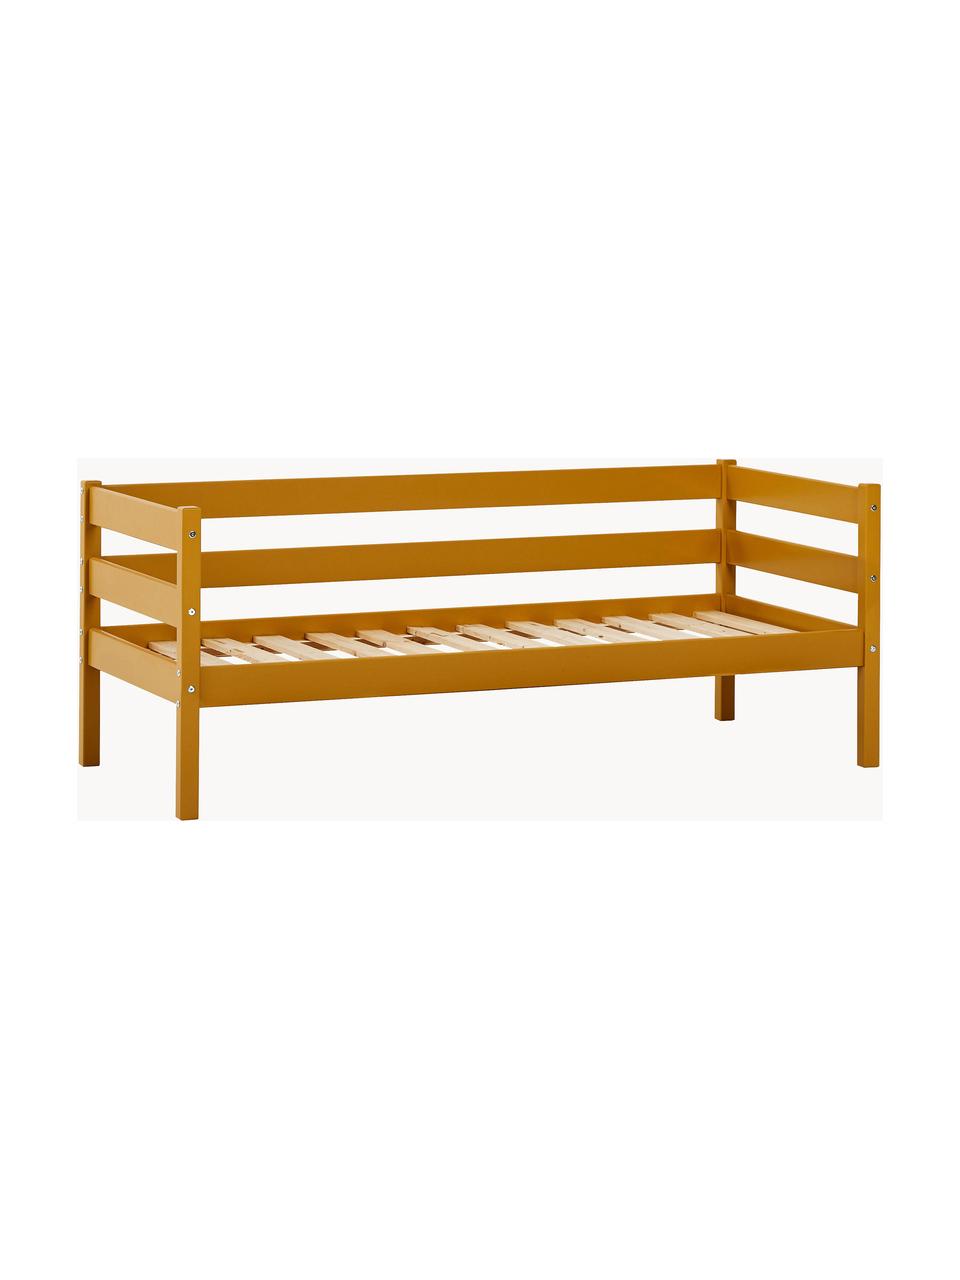 Dětská postel z borovicového dřeva Eco Comfort, 70 x 160 cm, Masivní borovicové dřevo, certifikace FSC, překližka, Borovicové dřevo, lakované světle hnědou, Š 70 cm, D 160 cm